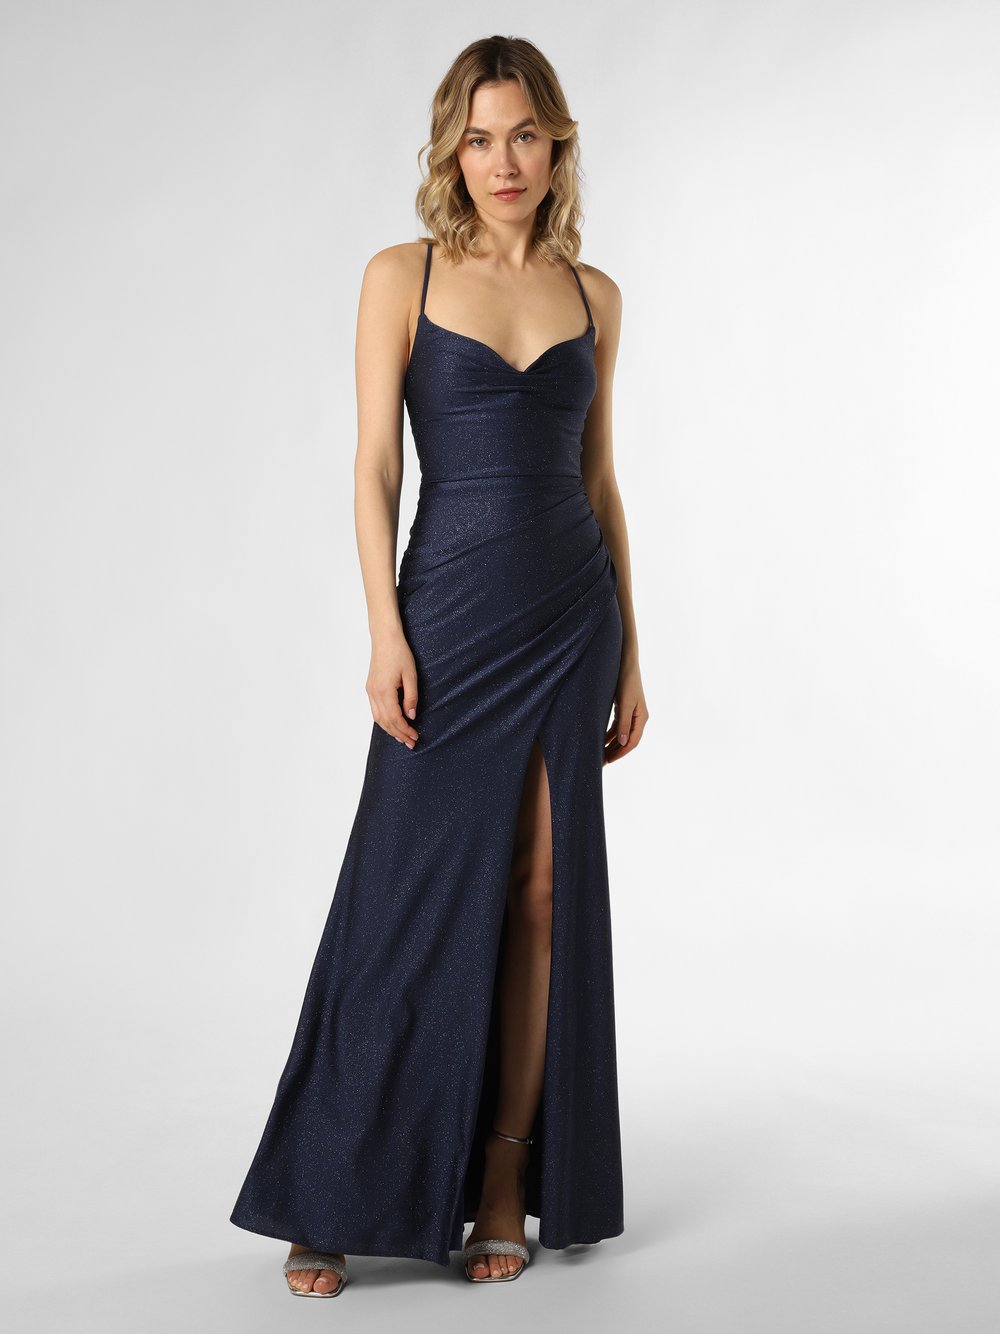 Luxuar Fashion Damska sukienka wieczorowa Kobiety niebieski jednolity, 38